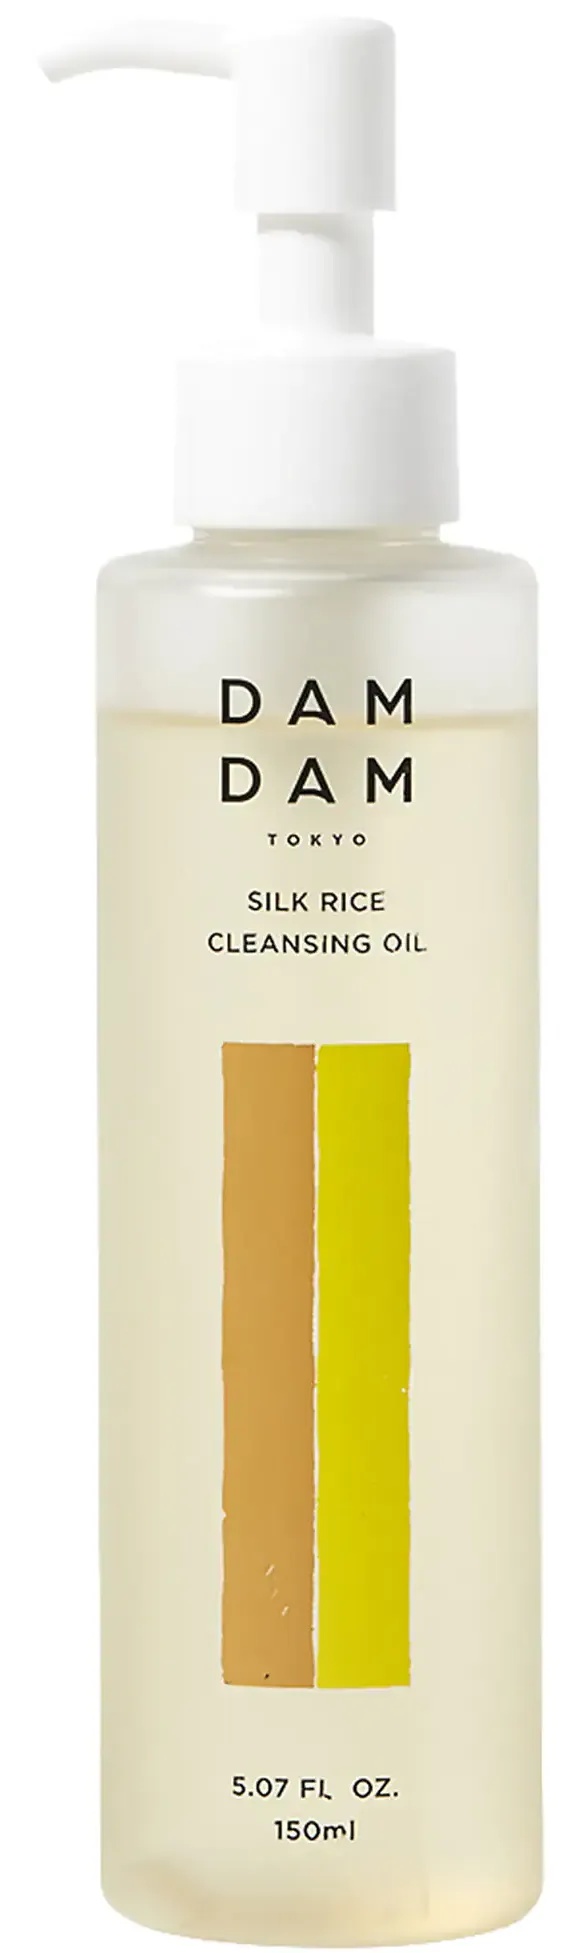 DAMDAM Silk Rice Makeup Removing Cleansing